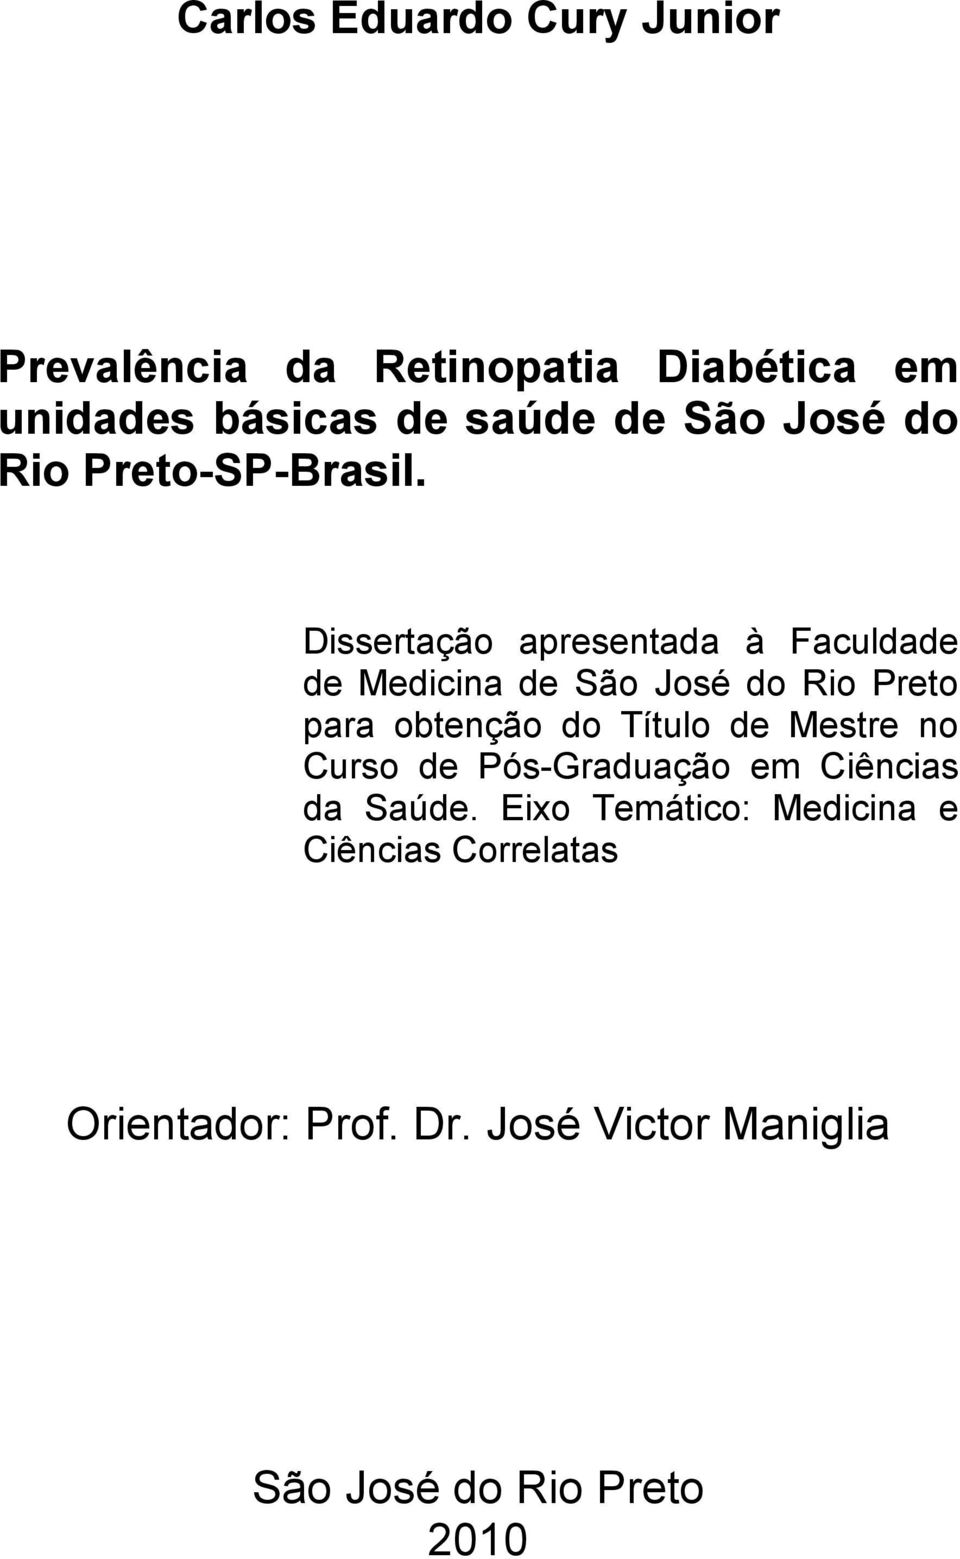 Dissertação apresentada à Faculdade de Medicina de São José do Rio Preto para obtenção do Título de